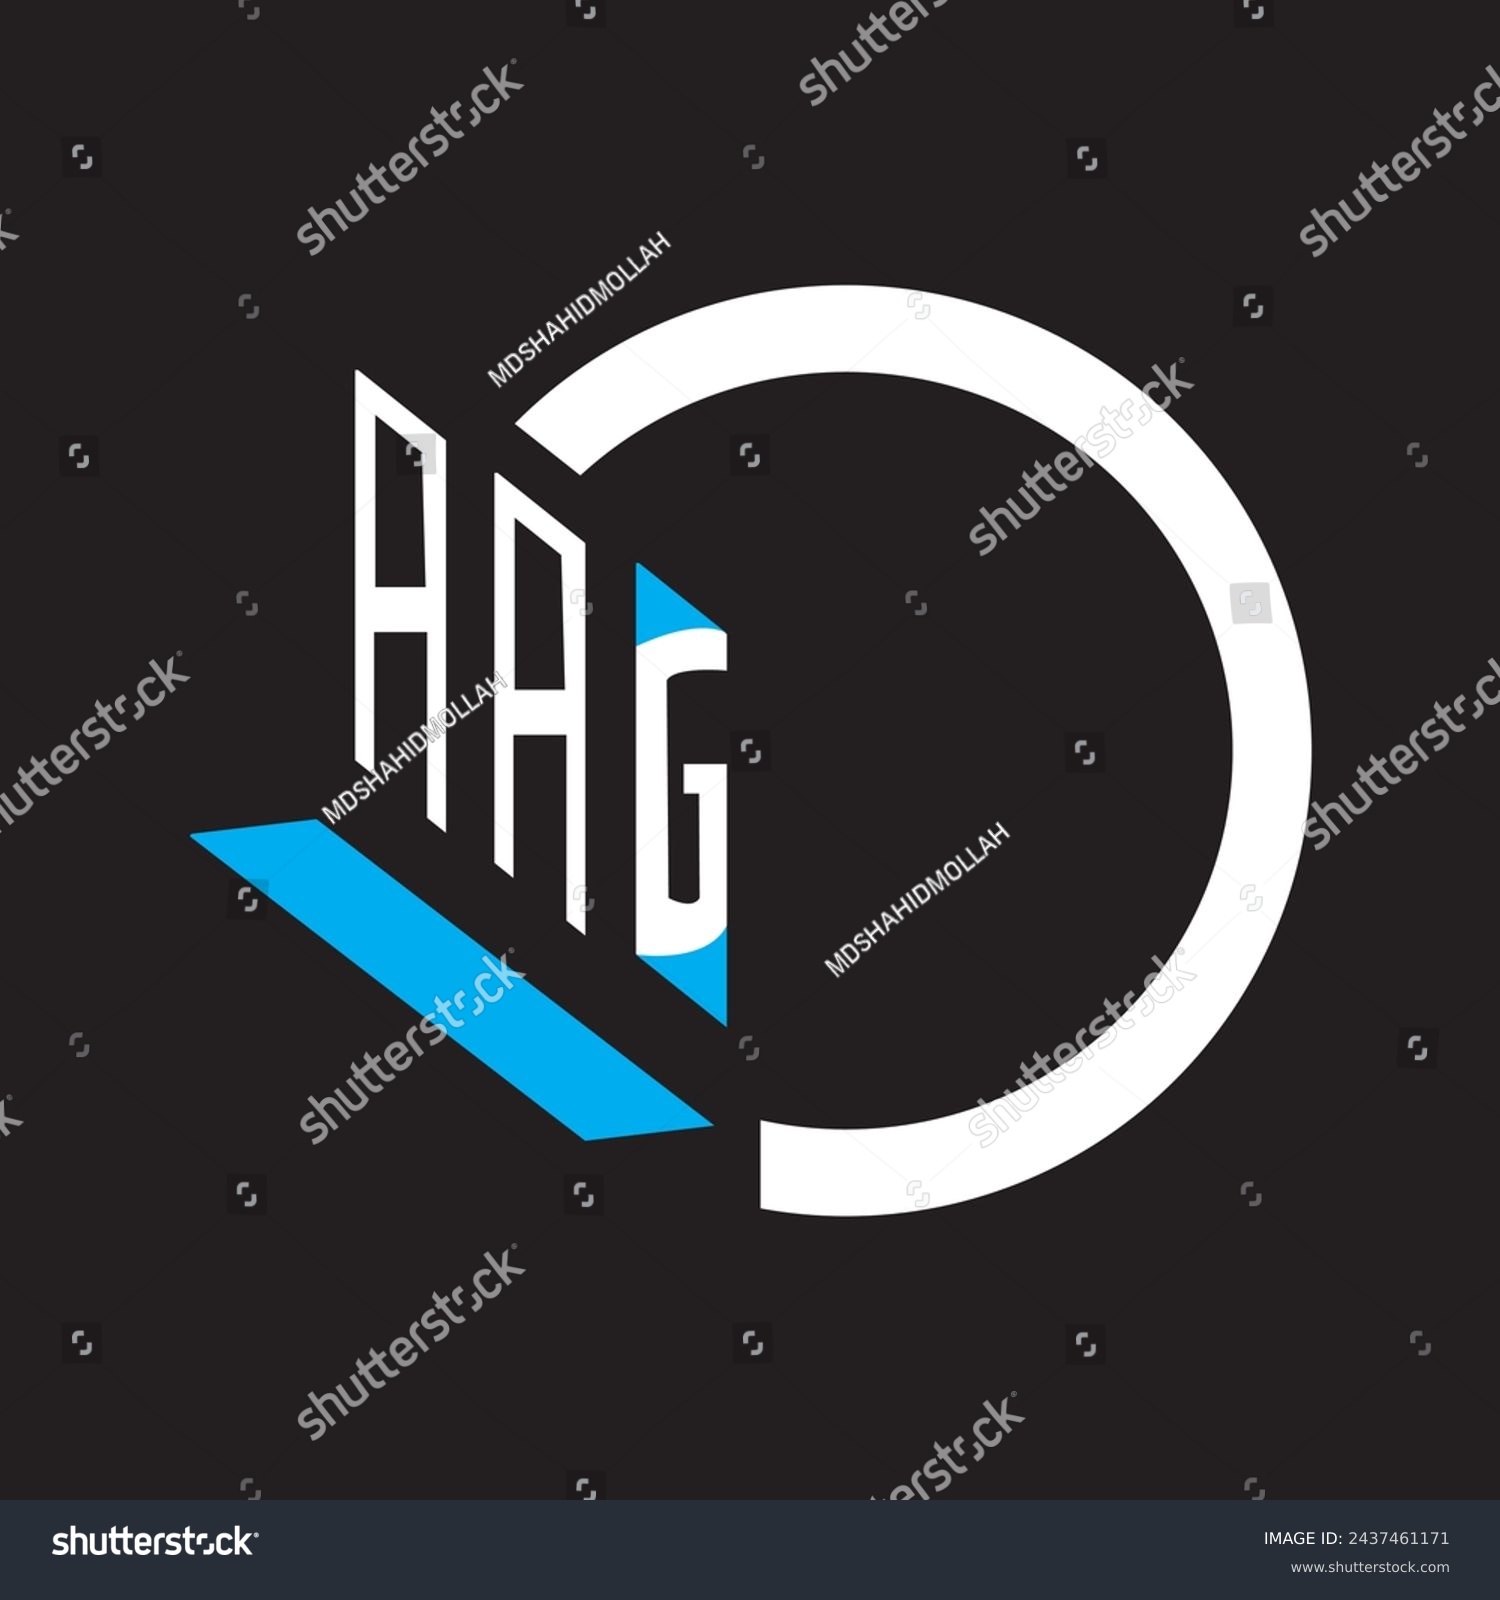 SVG of AAG letter logo vector design  blue an white, black color background ABG letter logo - icon design
 svg